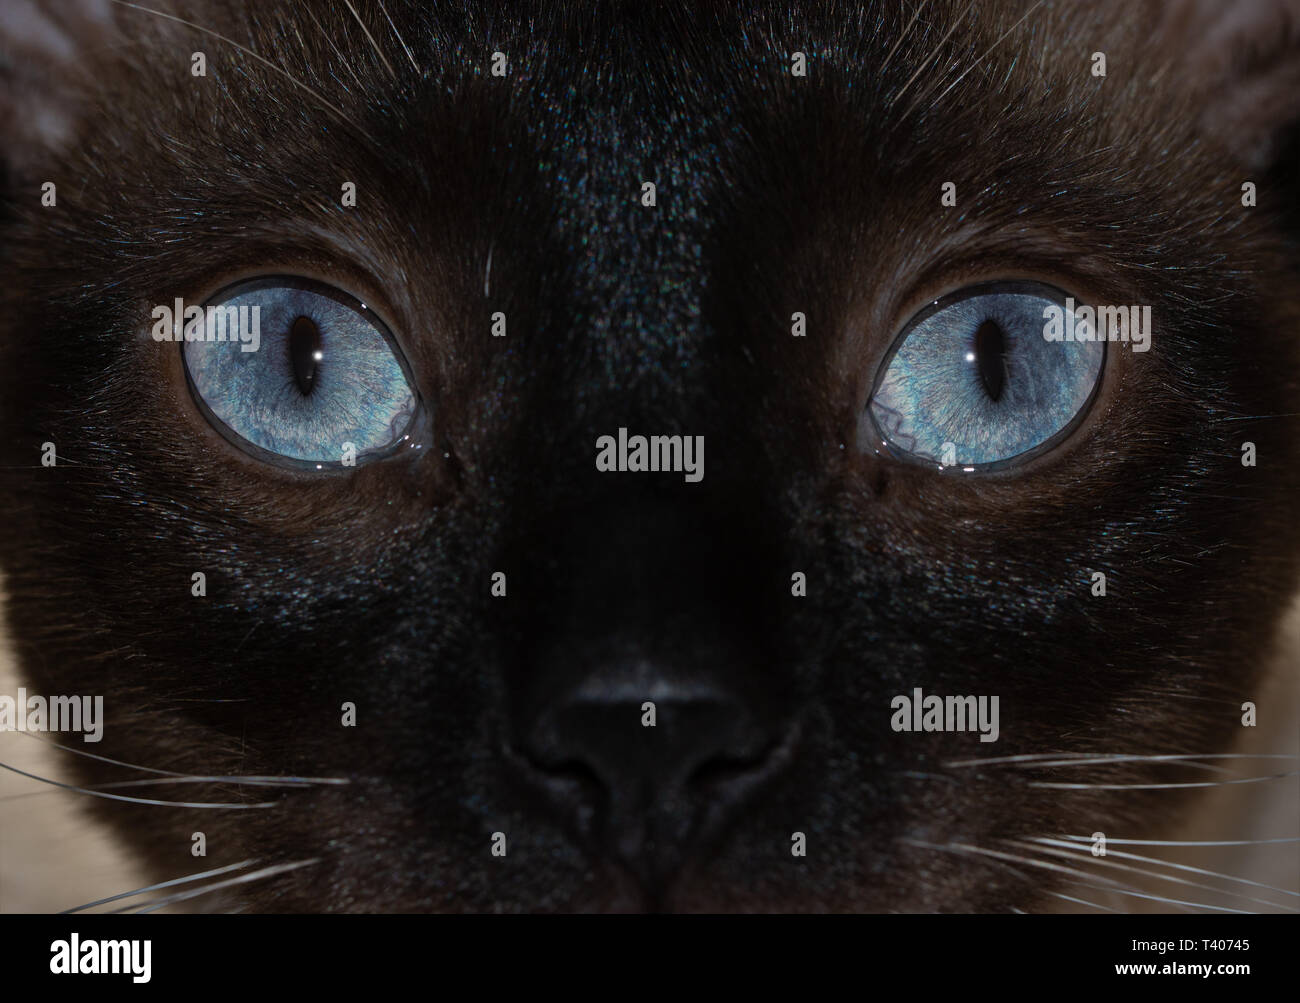 Image d'un chat Siamois est frappant les yeux bleus, avec un regard curieux au viewer Banque D'Images